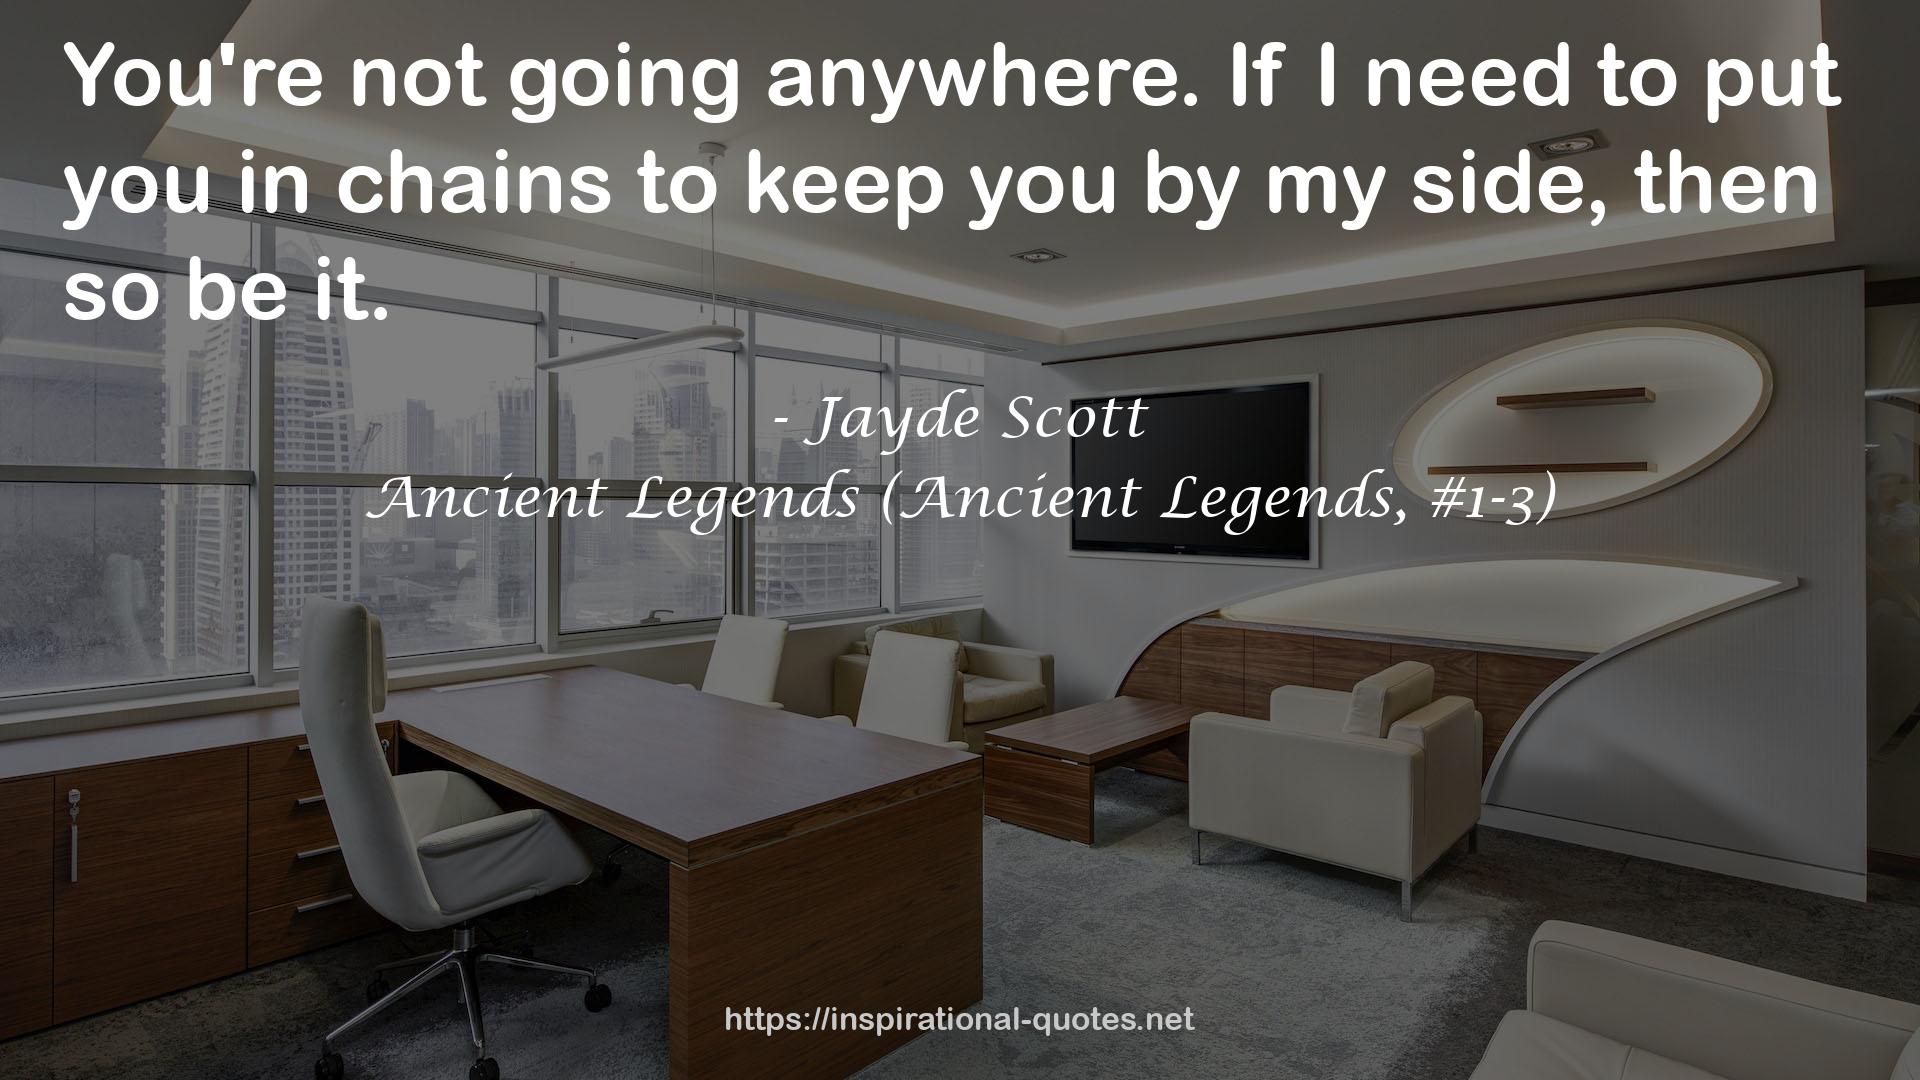 Ancient Legends (Ancient Legends, #1-3) QUOTES